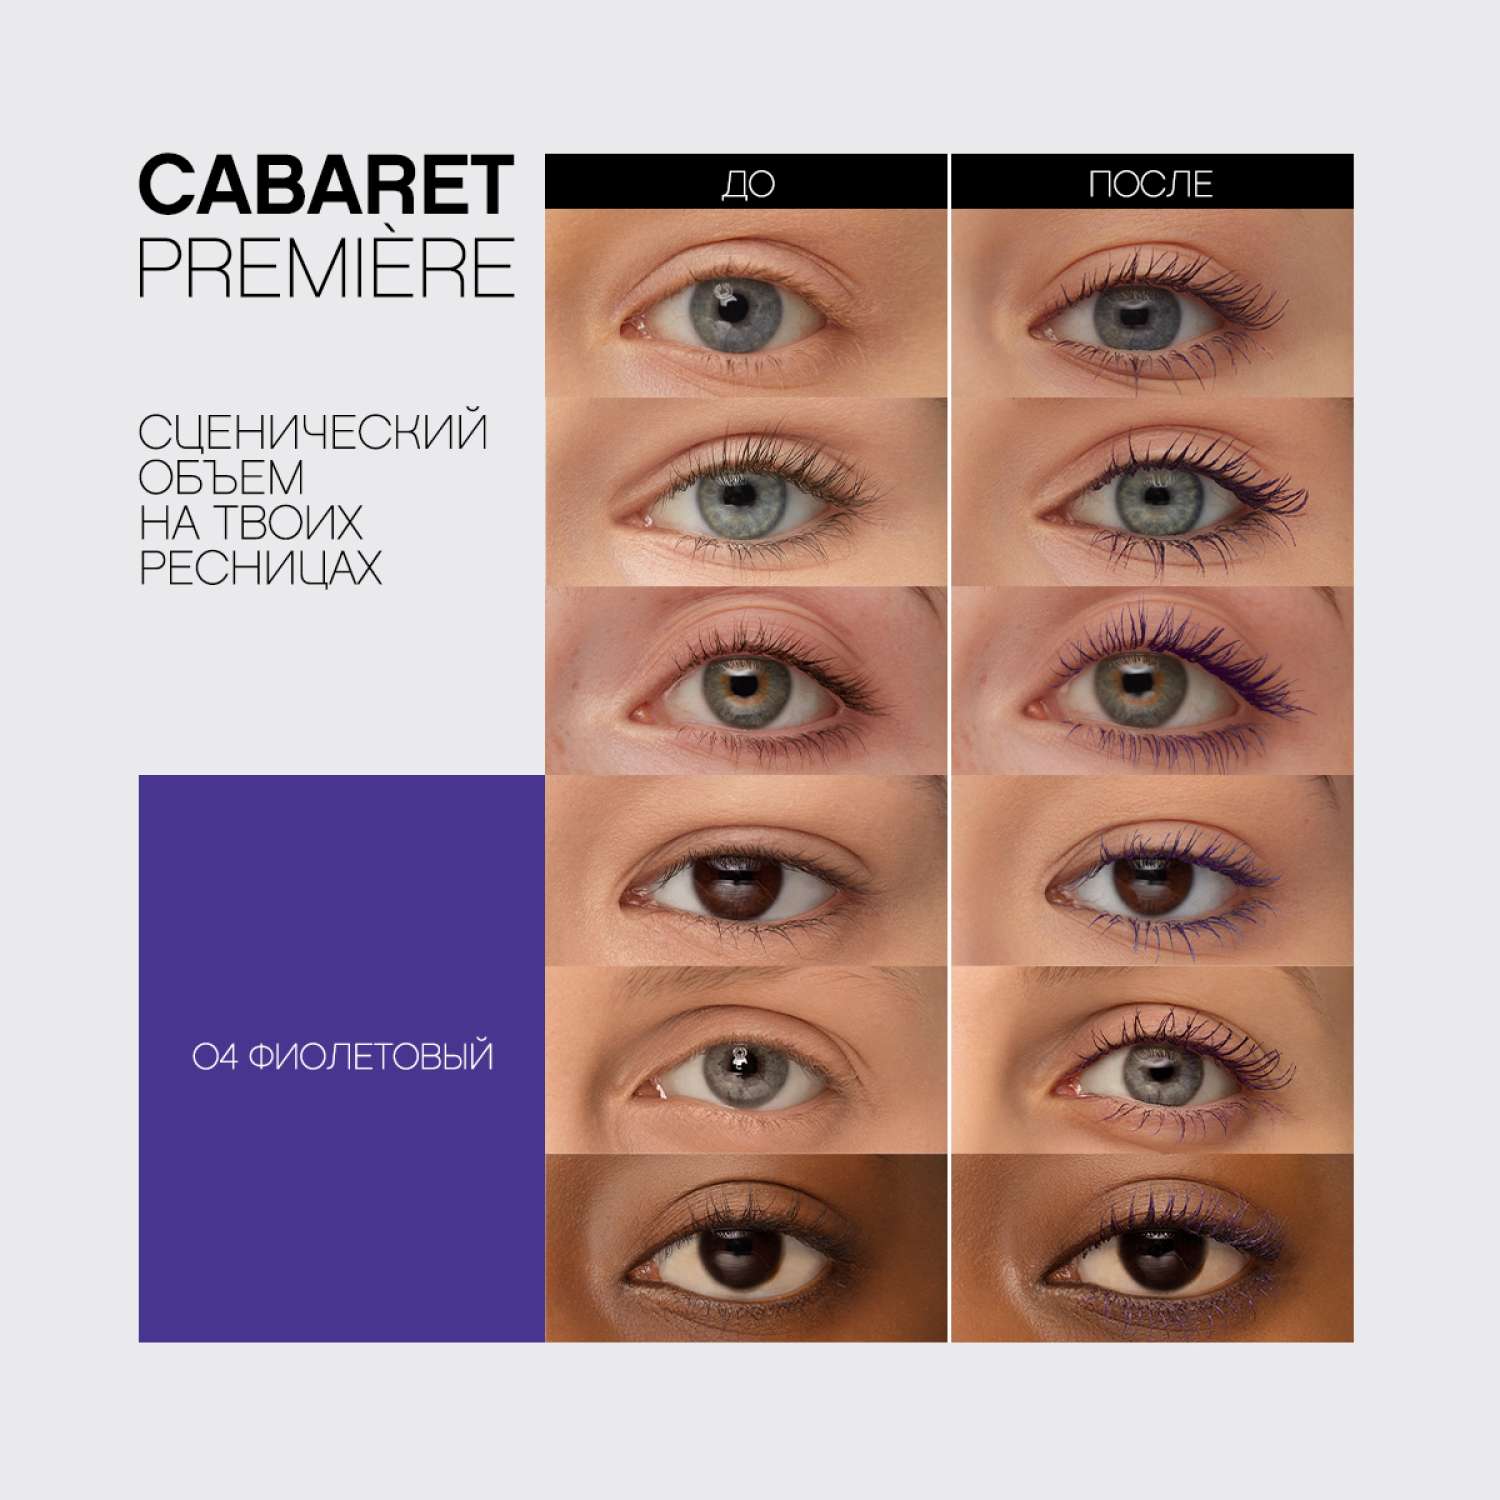 Тушь для ресниц Vivienne Sabo CABARET PREMIERE с эффектом сценического объёма тон 04 фиолетовая 9 мл - фото 10